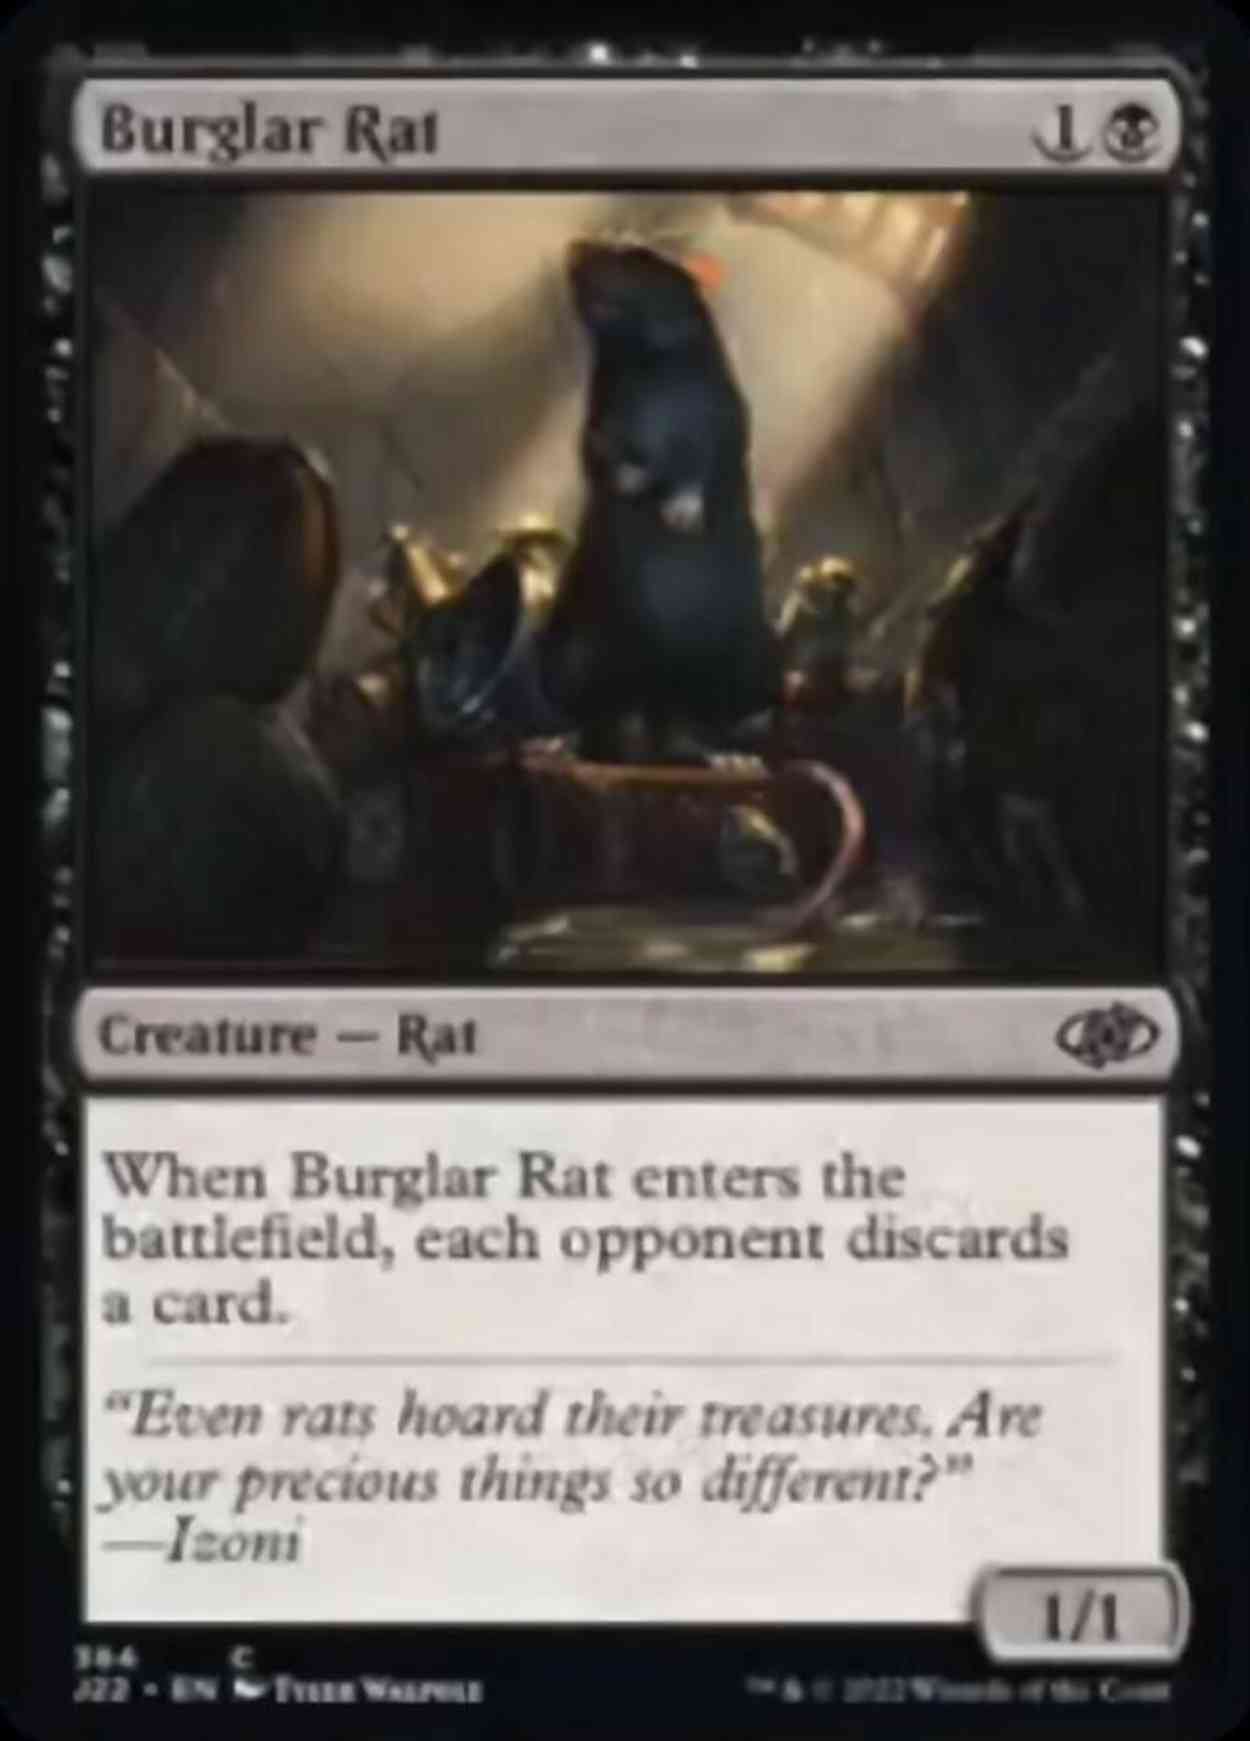 Burglar Rat magic card front